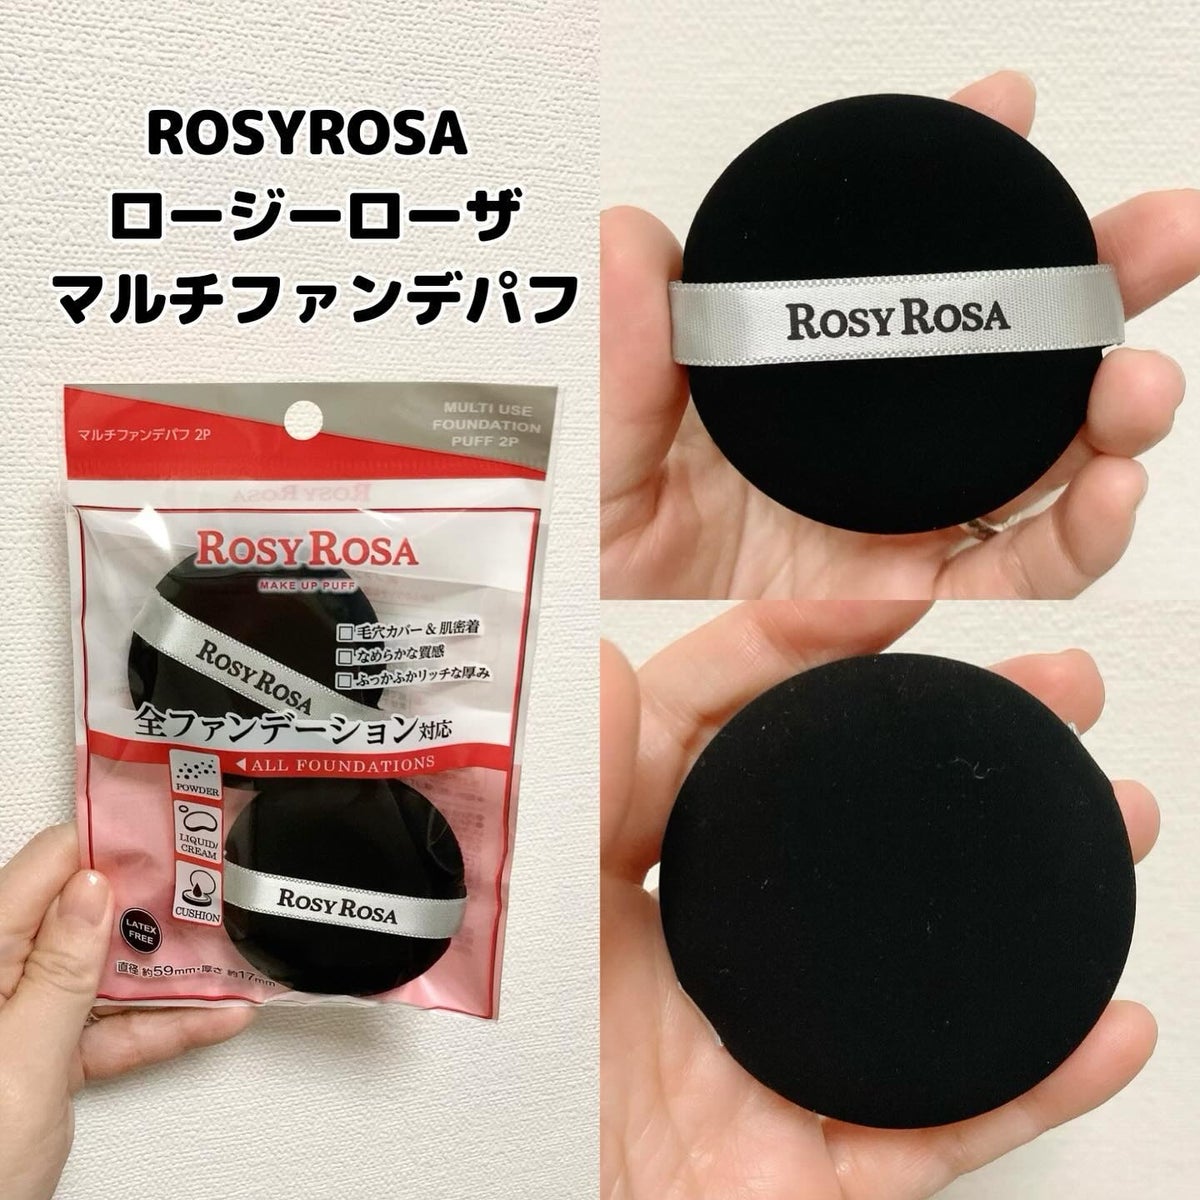 Rosy Rosa マルチファンデパフ 2P - メイク道具・化粧小物